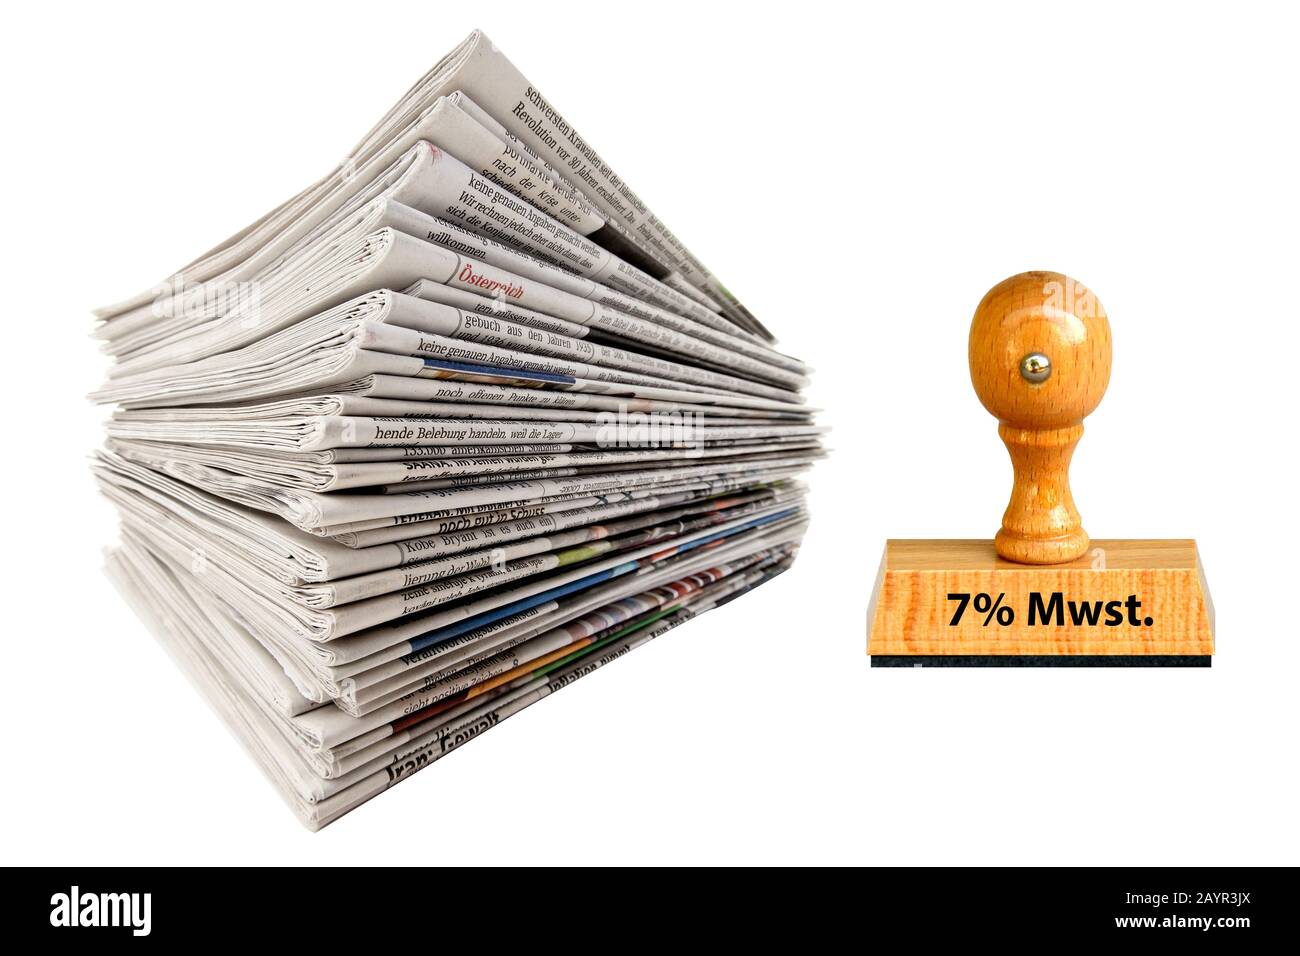 Bollatura 7 % Mwst, 7 % imposta sul valore aggiunto, con pila di giornali, Germania Foto Stock